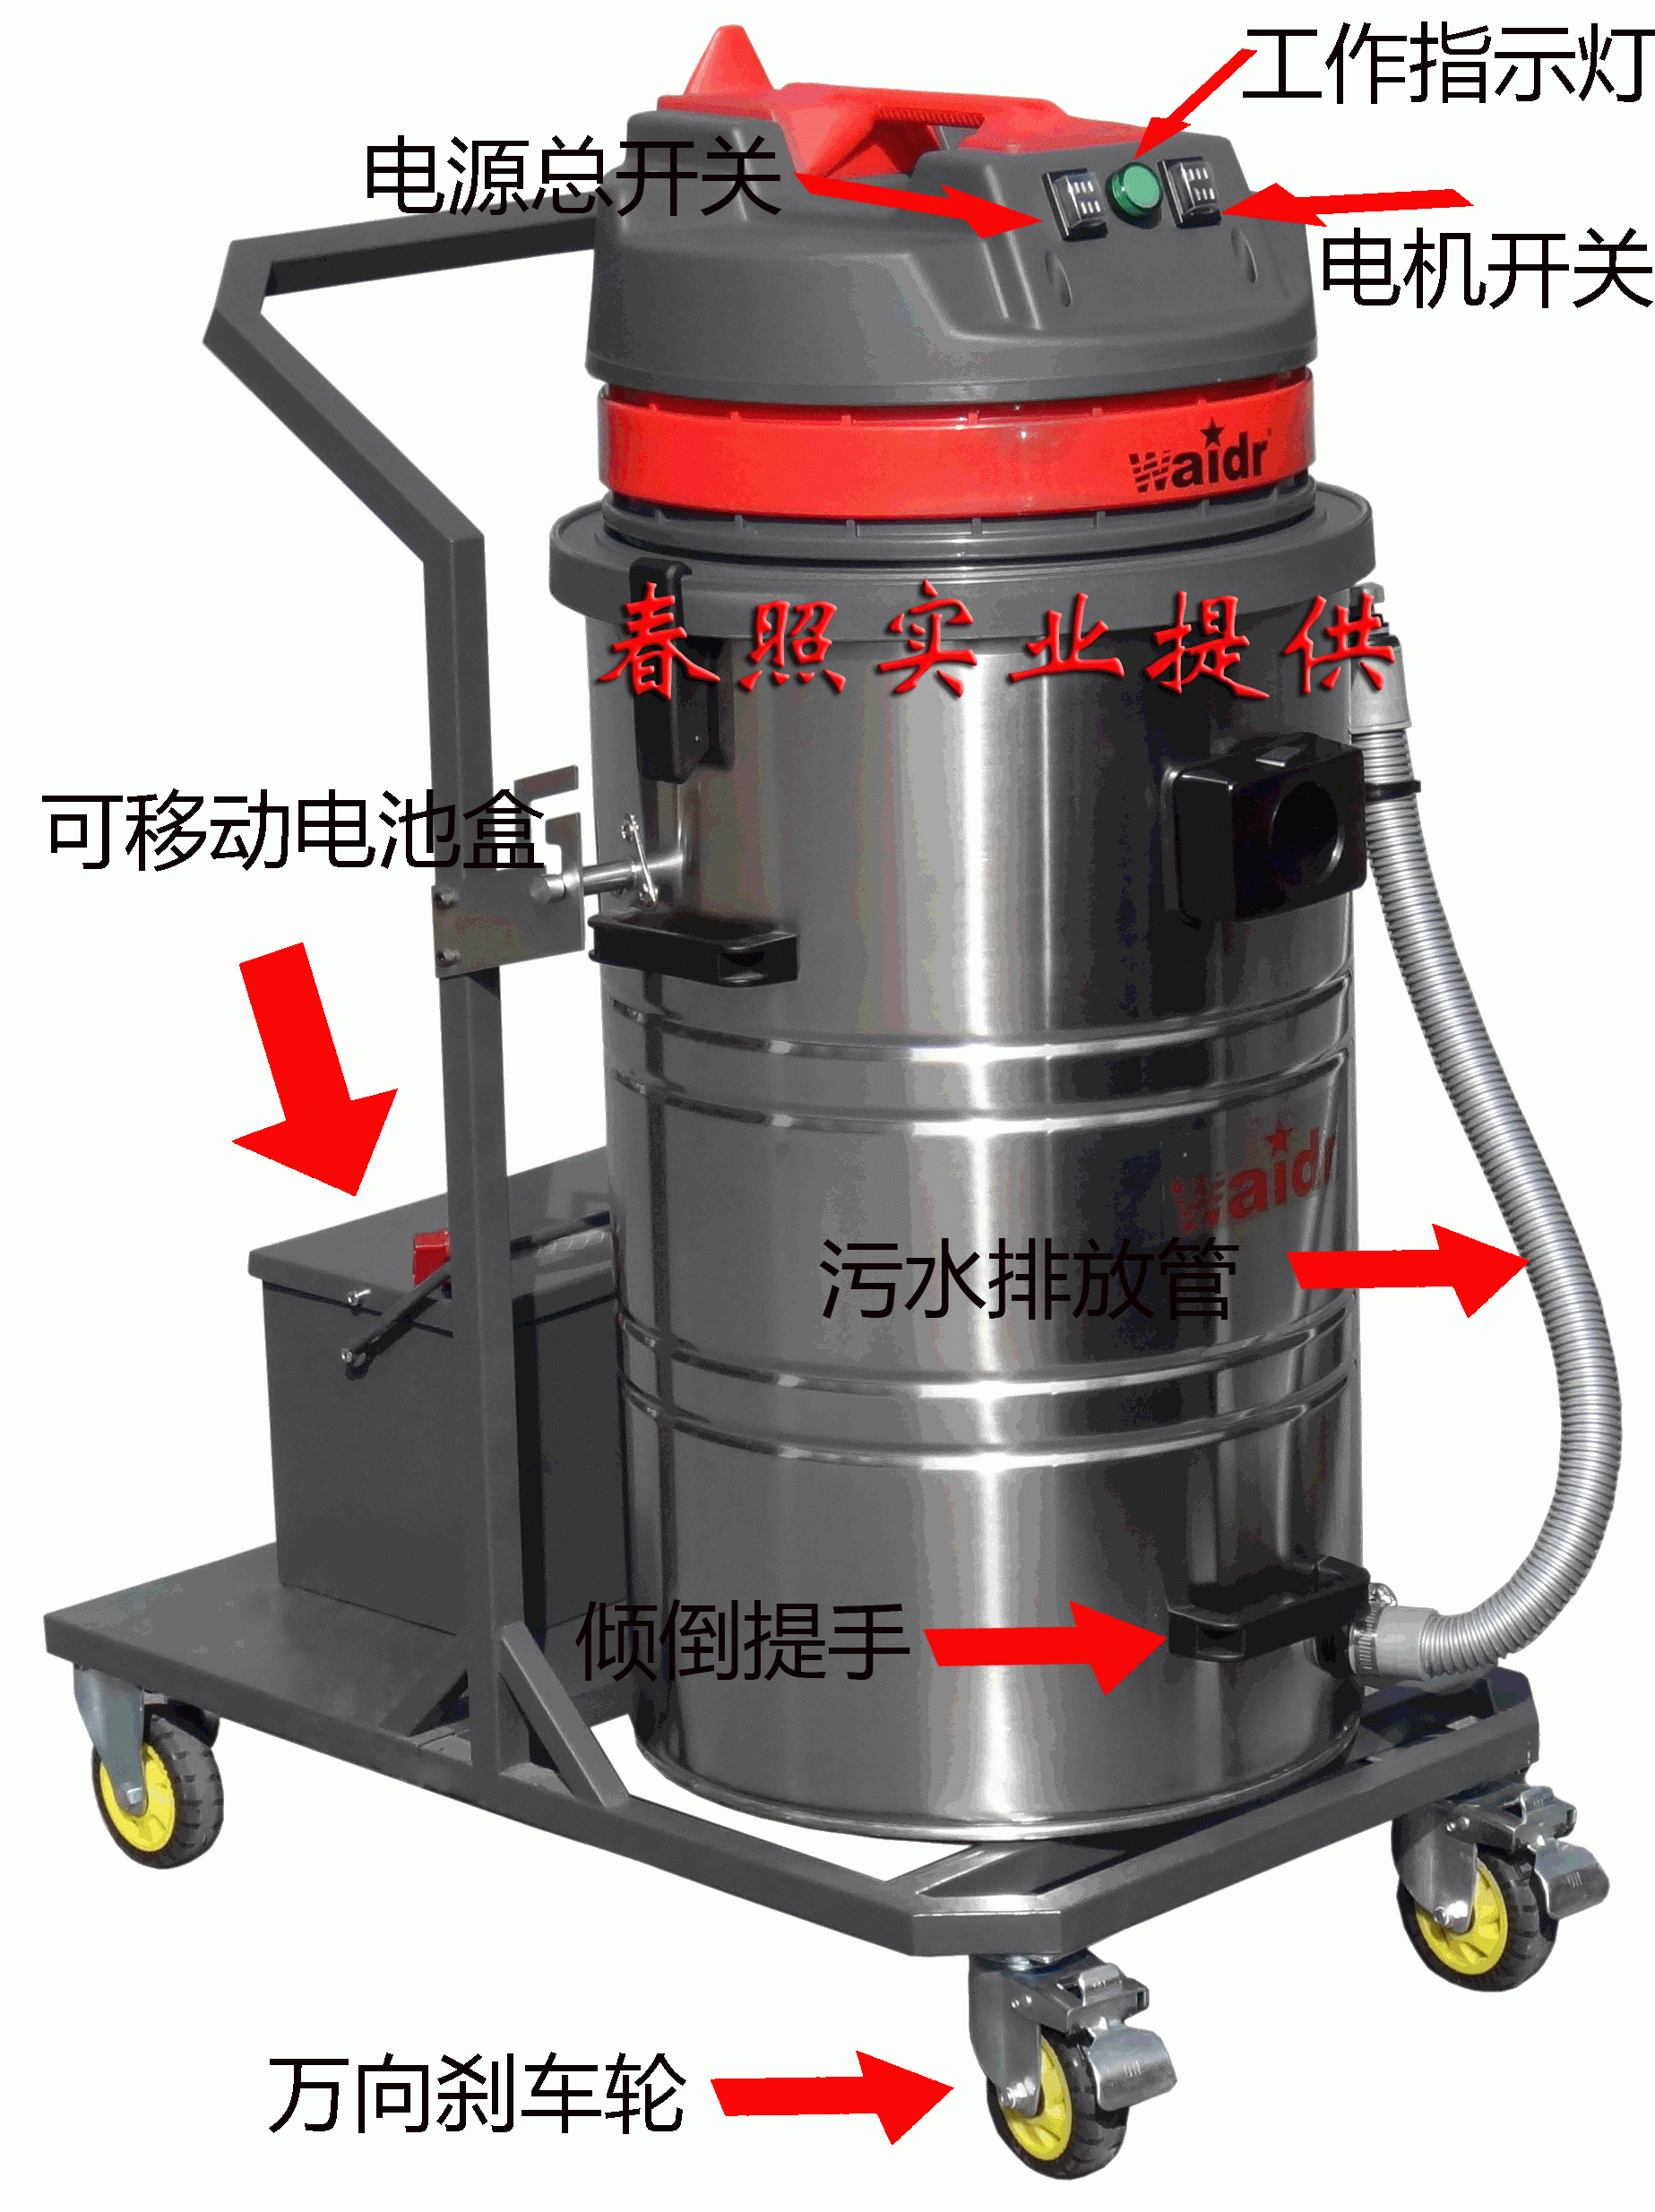 上海威德尔WD-60电瓶式吸尘器贵吗|大功率吸尘器价格多少|嘉兴哪里有卖充电式工业吸尘器